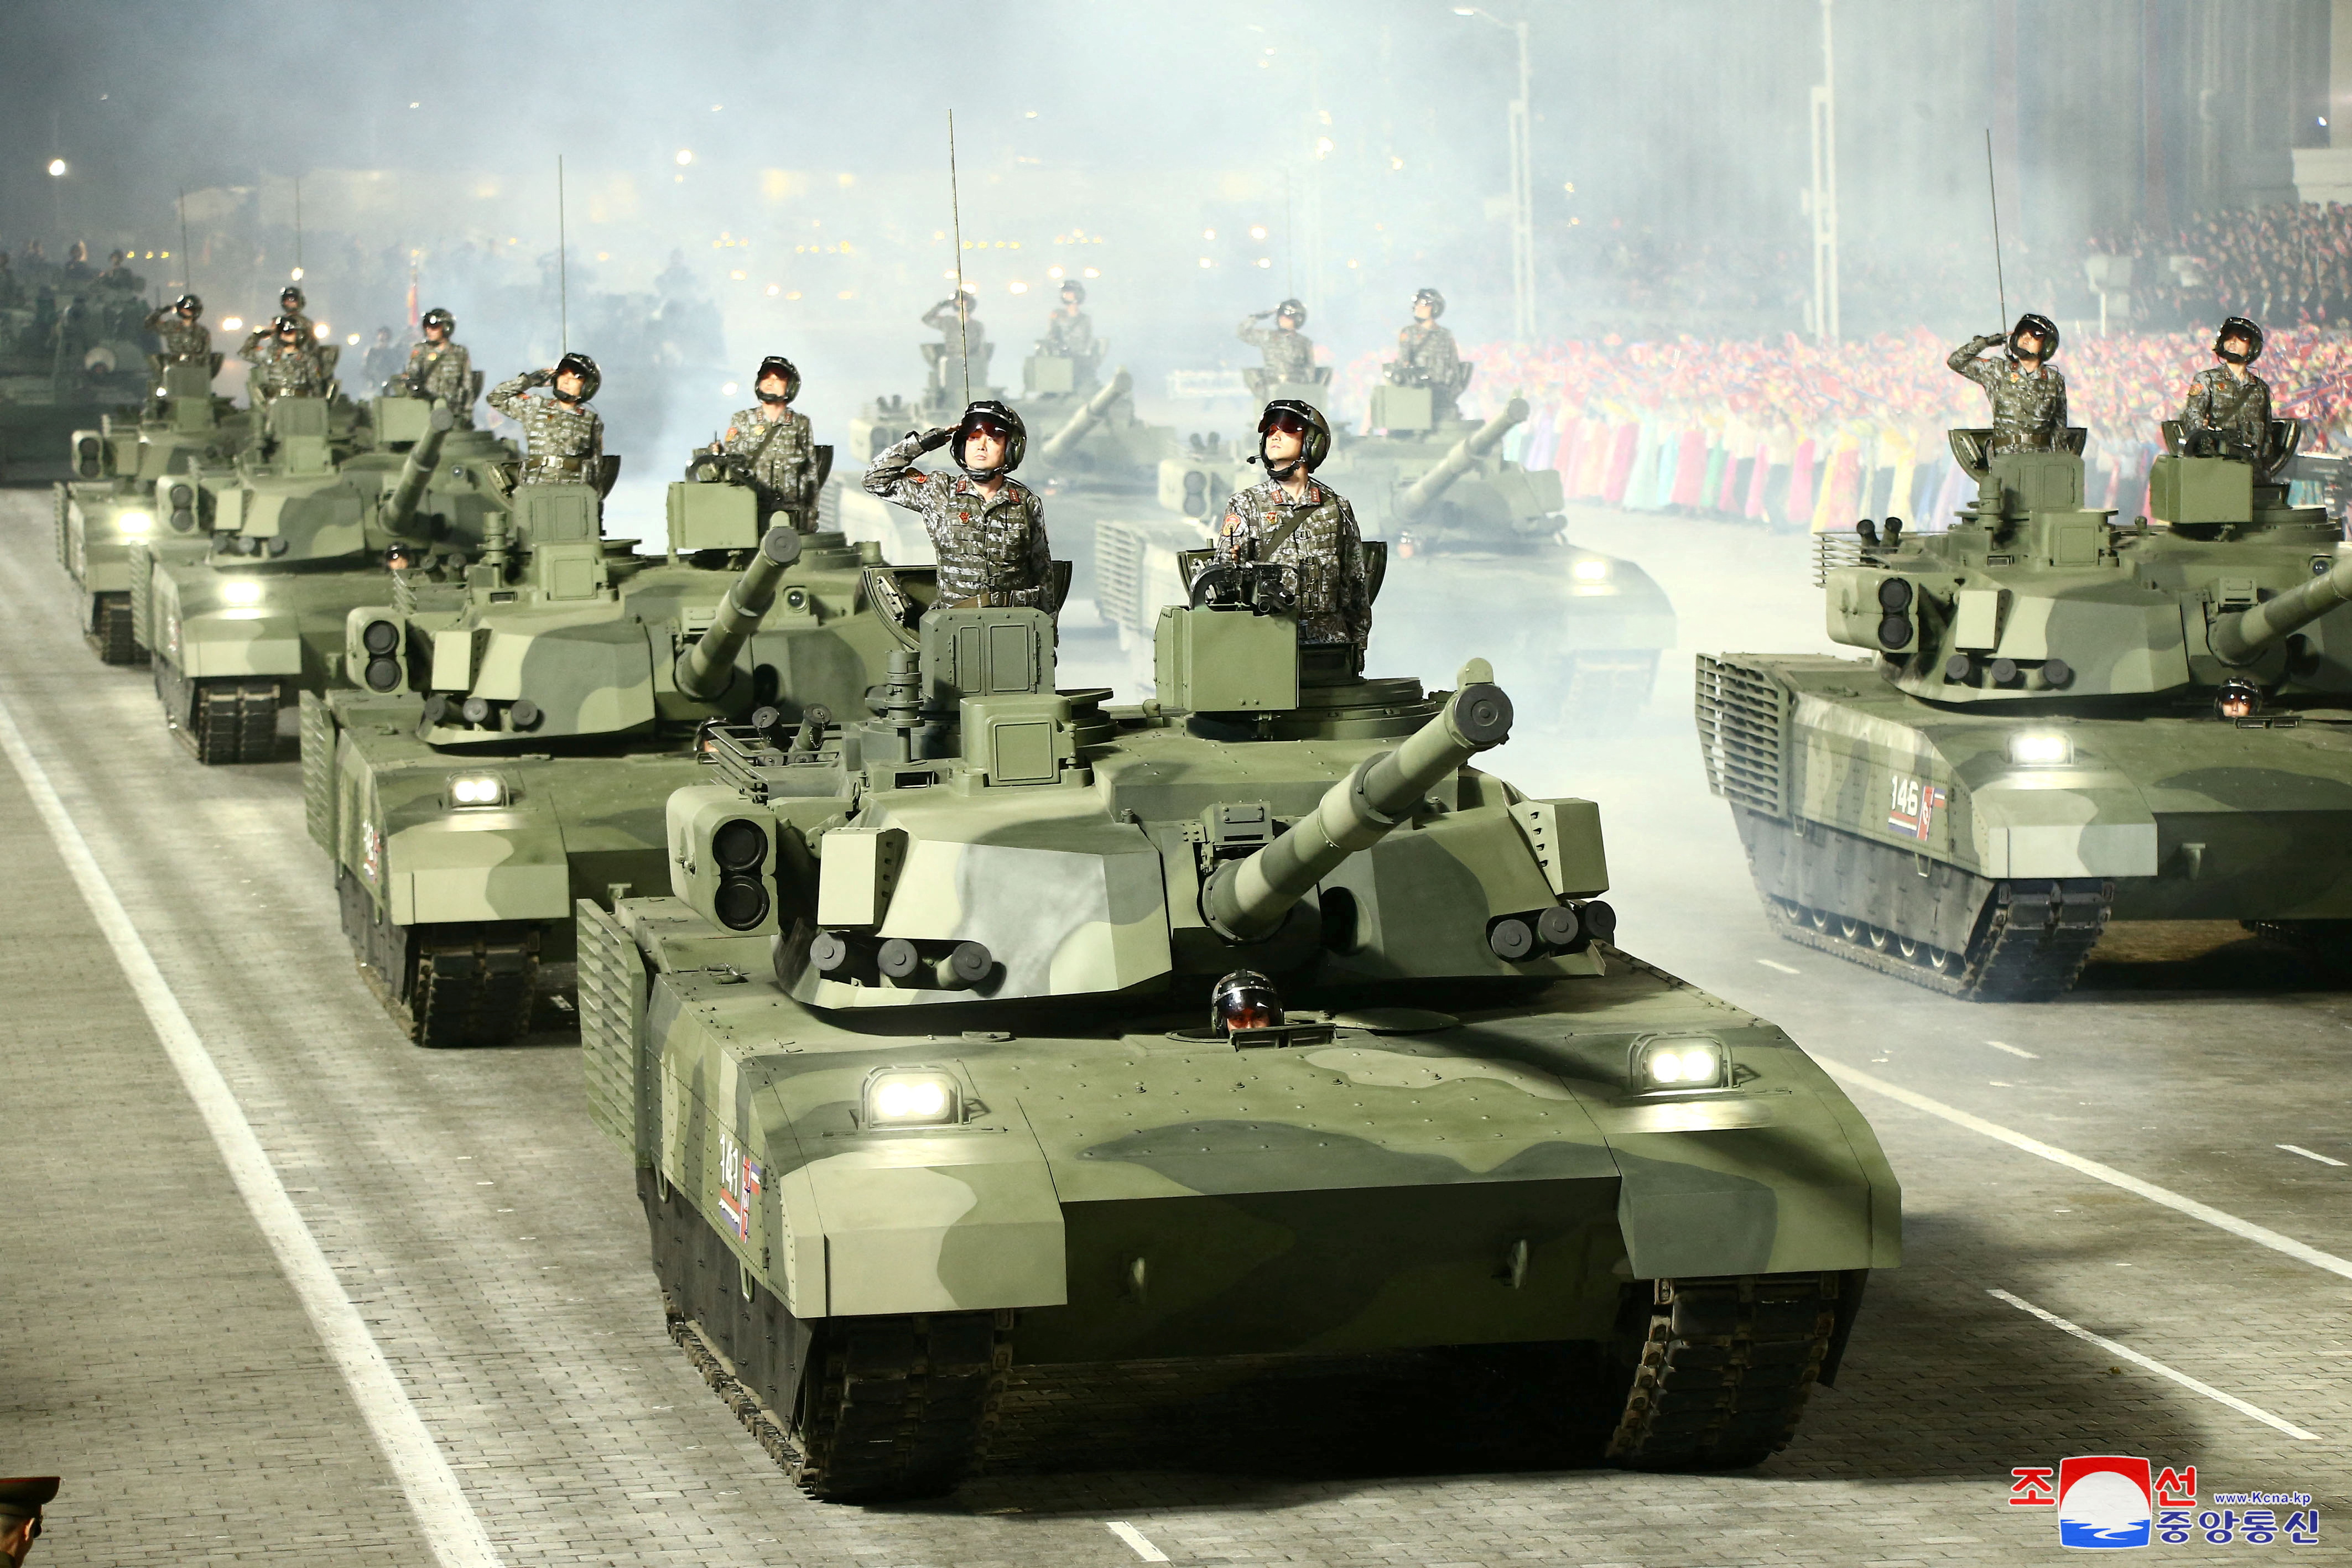 El nuevo ministro de Defensa de Seul, Lee Jong-sup, calificó como muy grave el desarrollo armamentístico de Corea del Norte